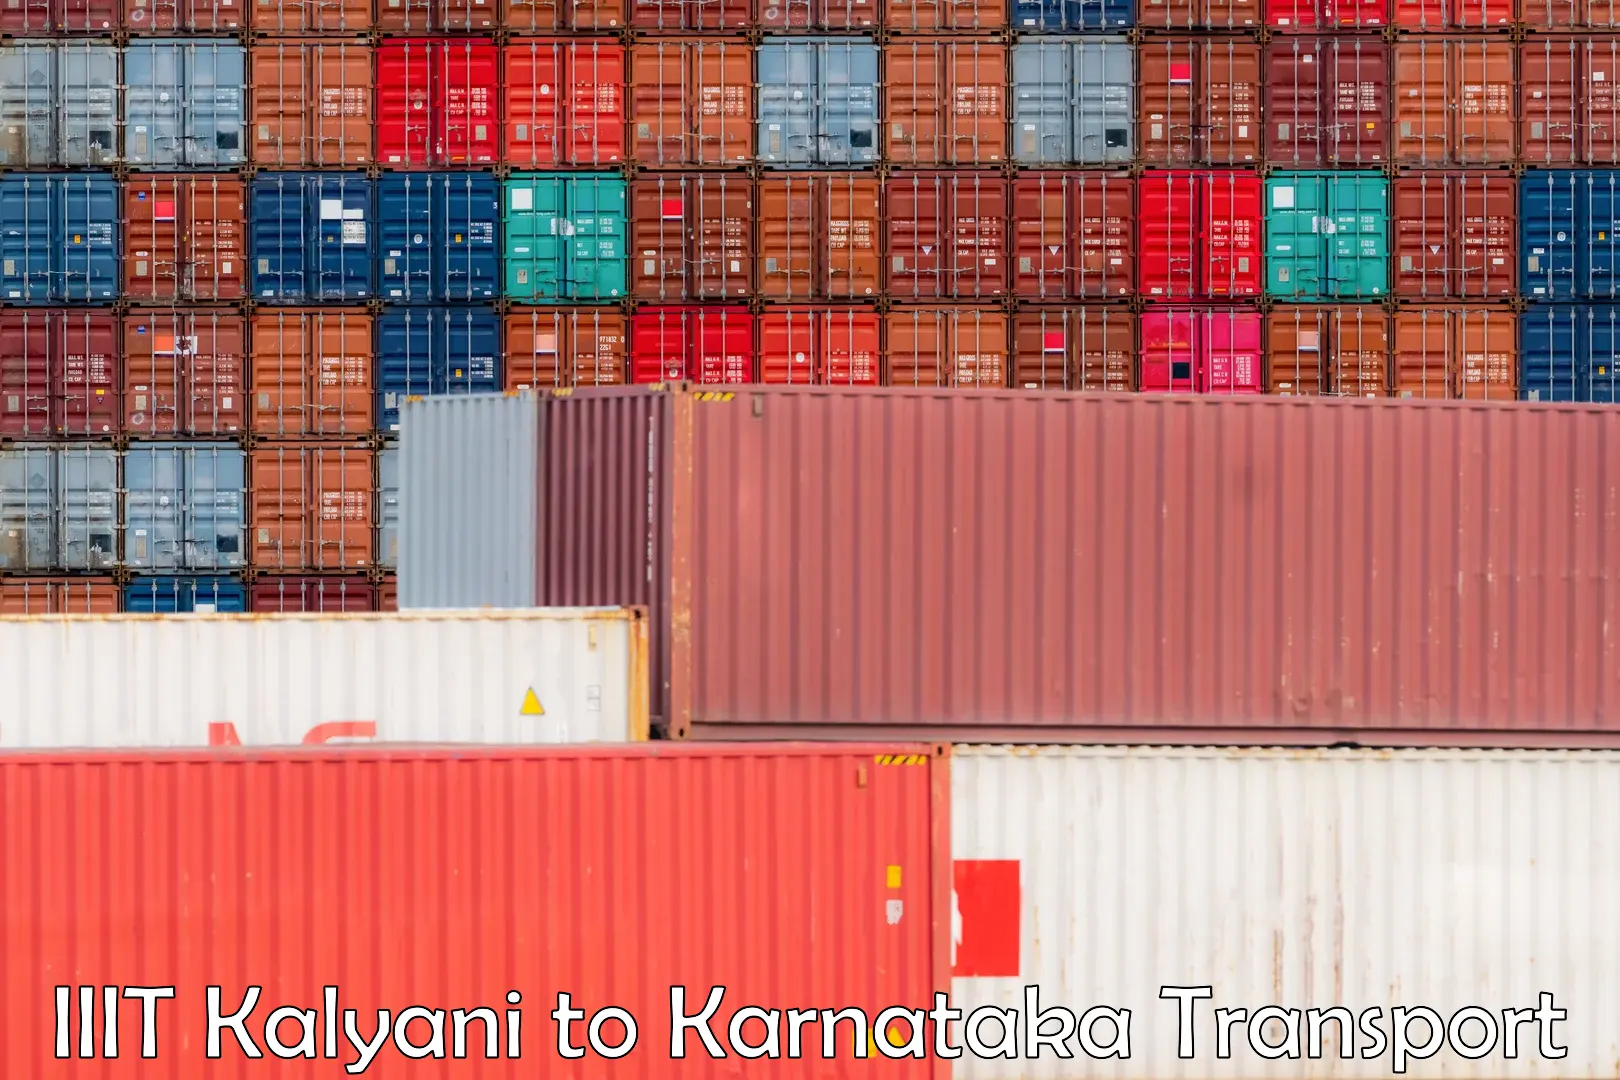 Furniture transport service IIIT Kalyani to Deodurga